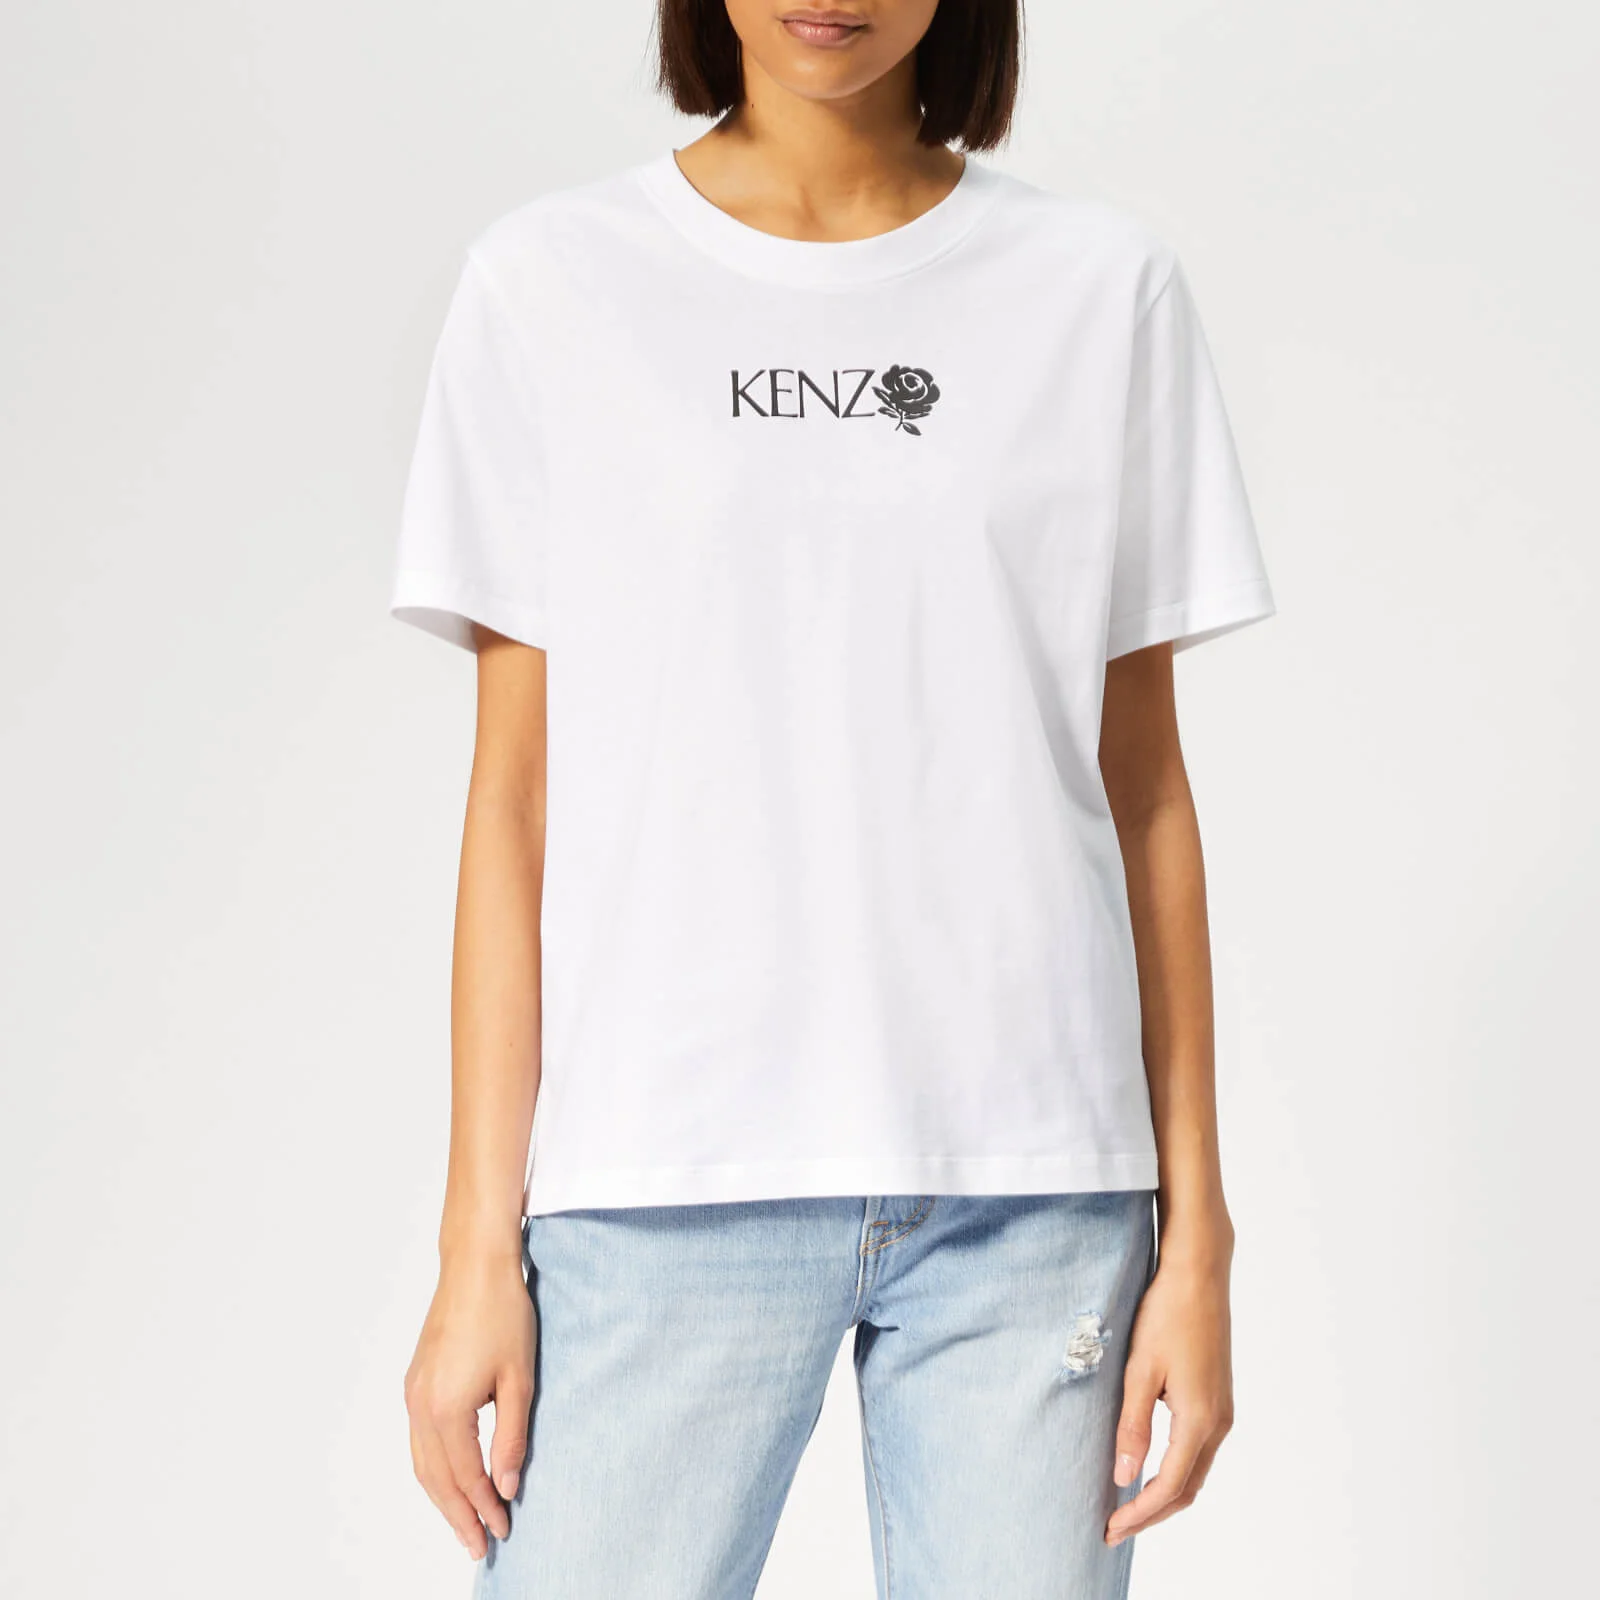 KENZO Women's Comfort T-Shirt - White Image 1